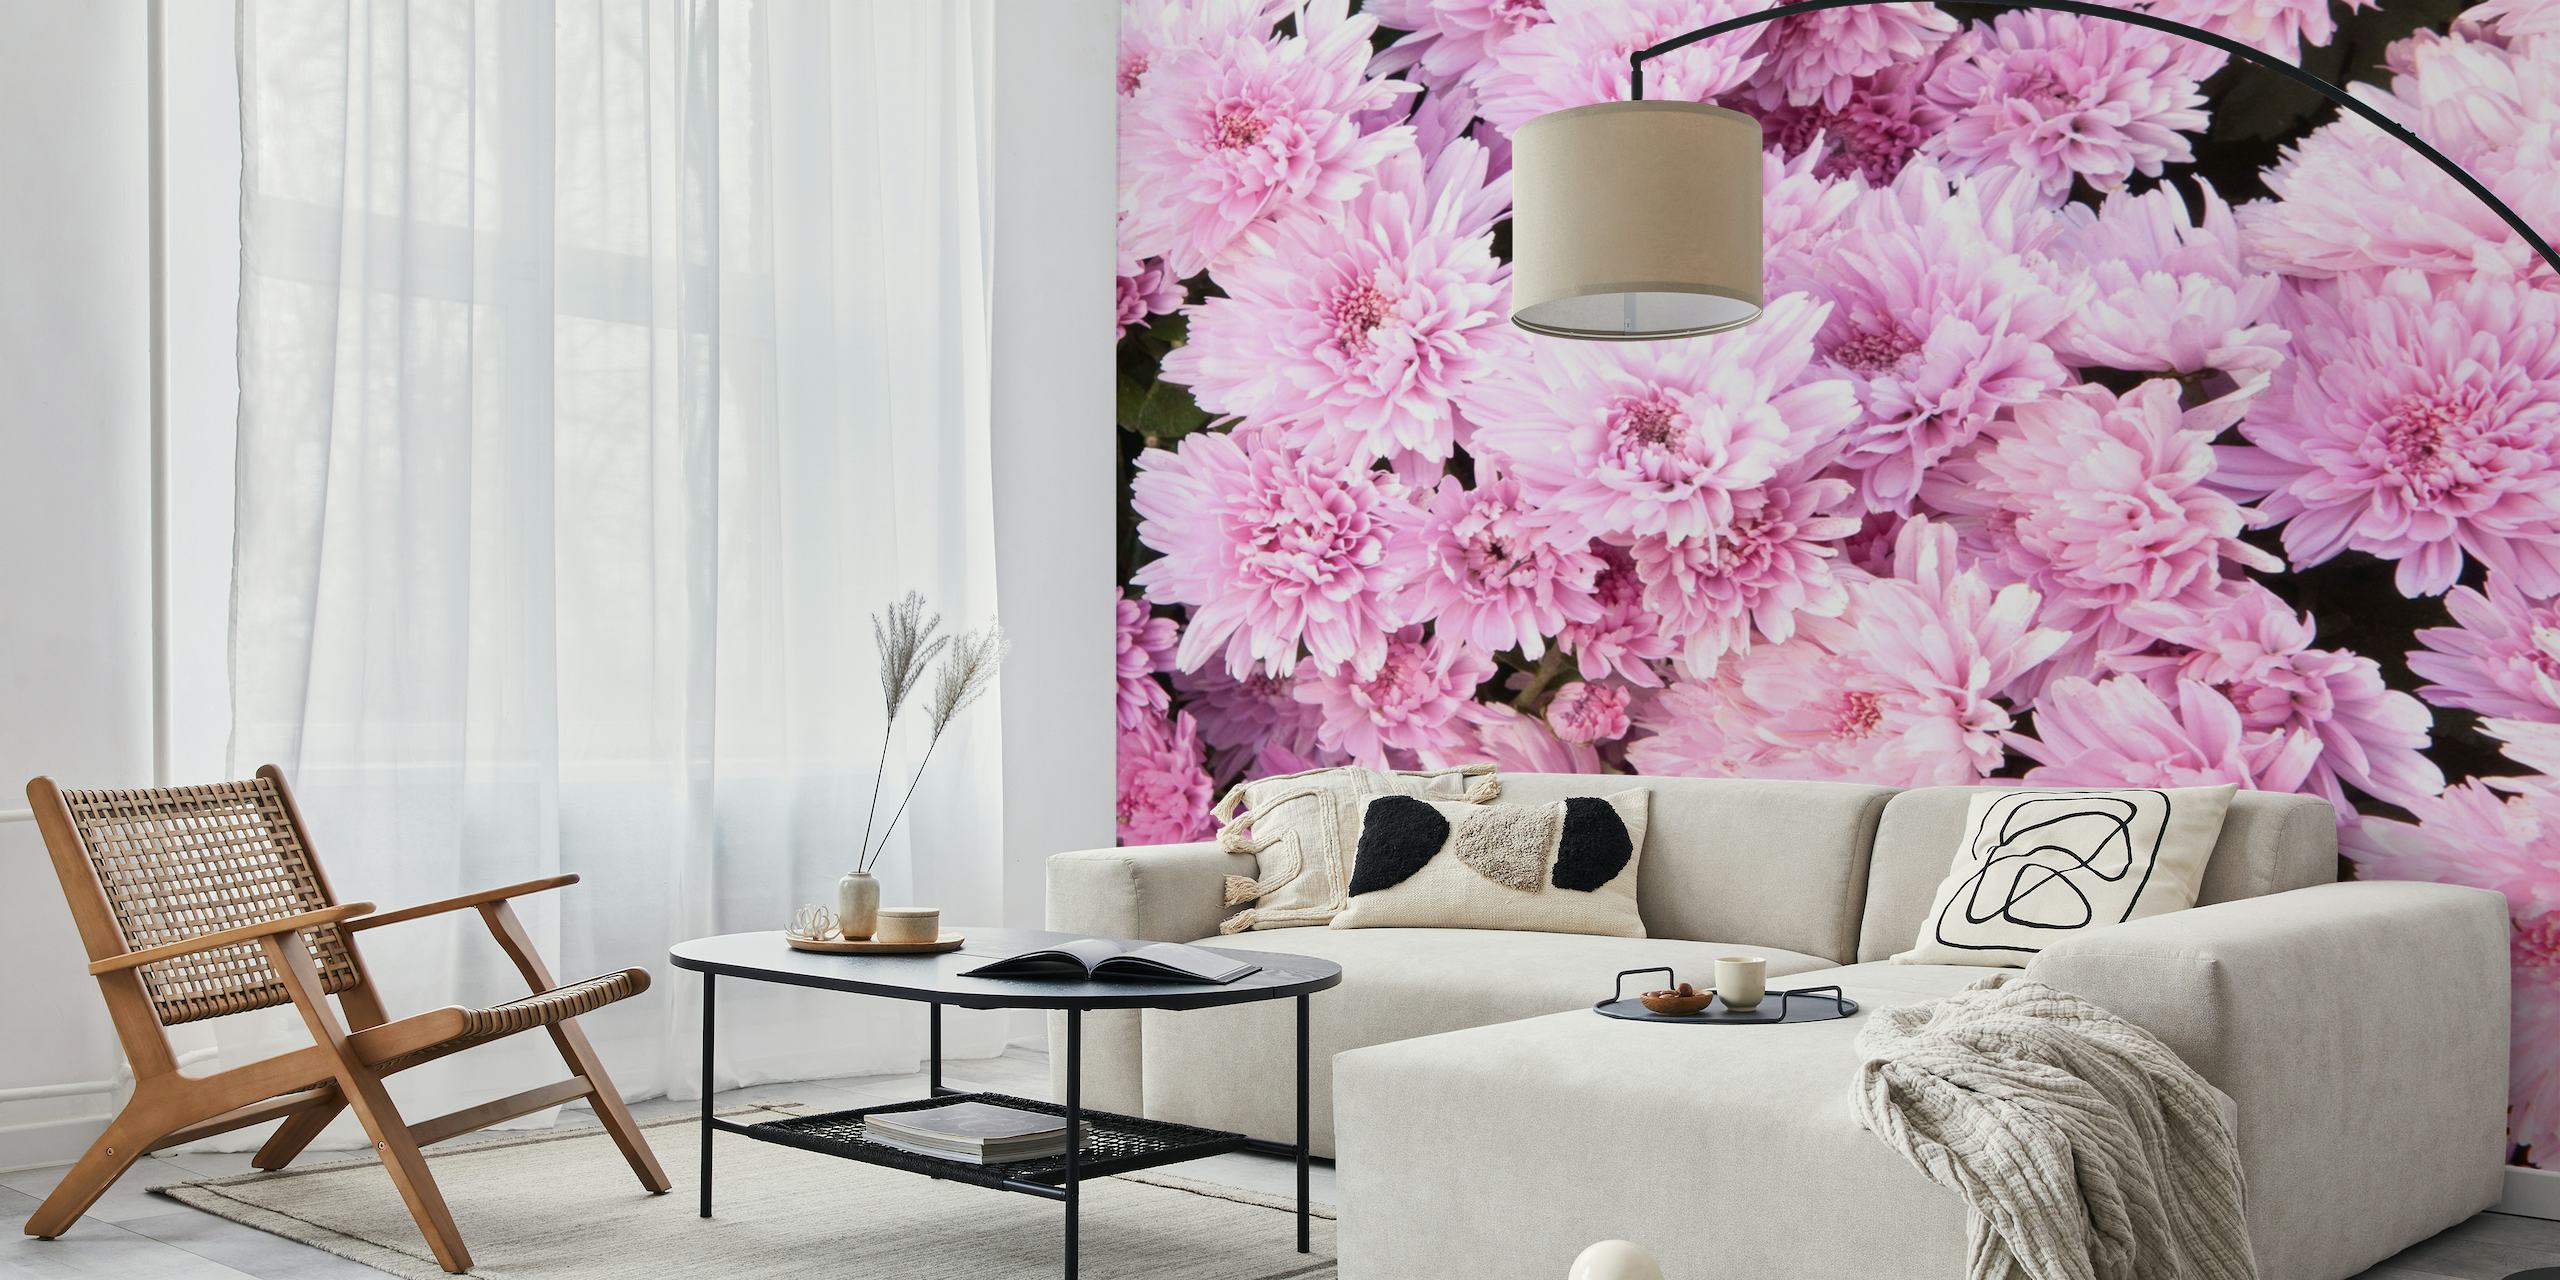 Nježno ružičasti cvjetovi krizantema ispunjavaju okvir, stvarajući bujni cvjetni zidni mural